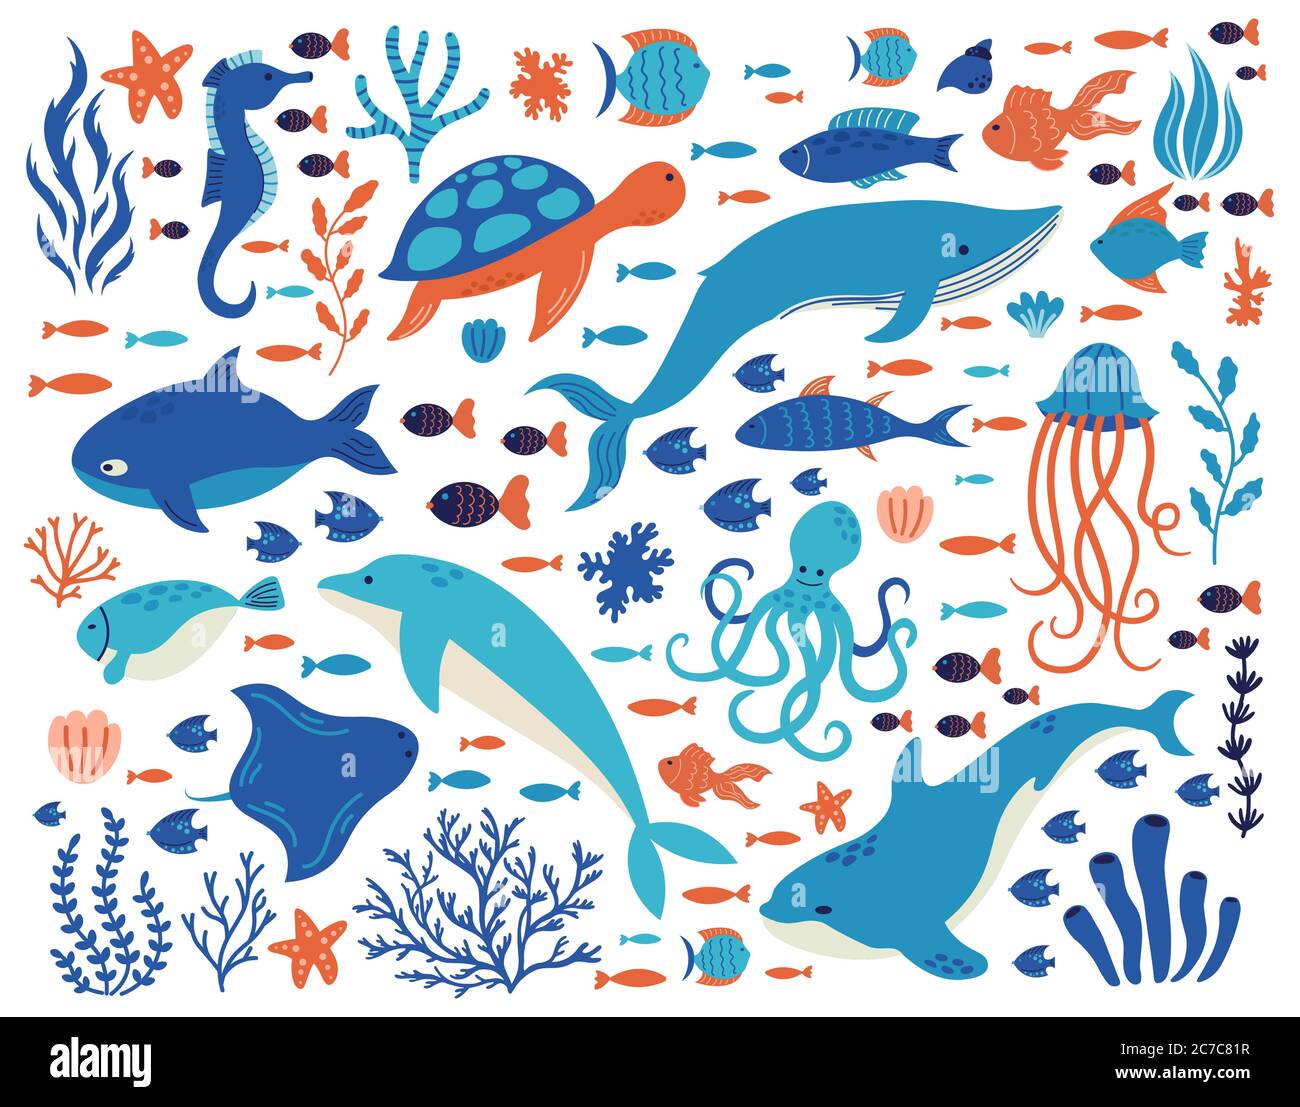 Doodle animali subacquei. Creature oceaniche, vita marina disegnata a mano, delfini, balene, tartarughe, polpi, coralli, piante marine, set di illustrazioni vettoriali Illustrazione Vettoriale